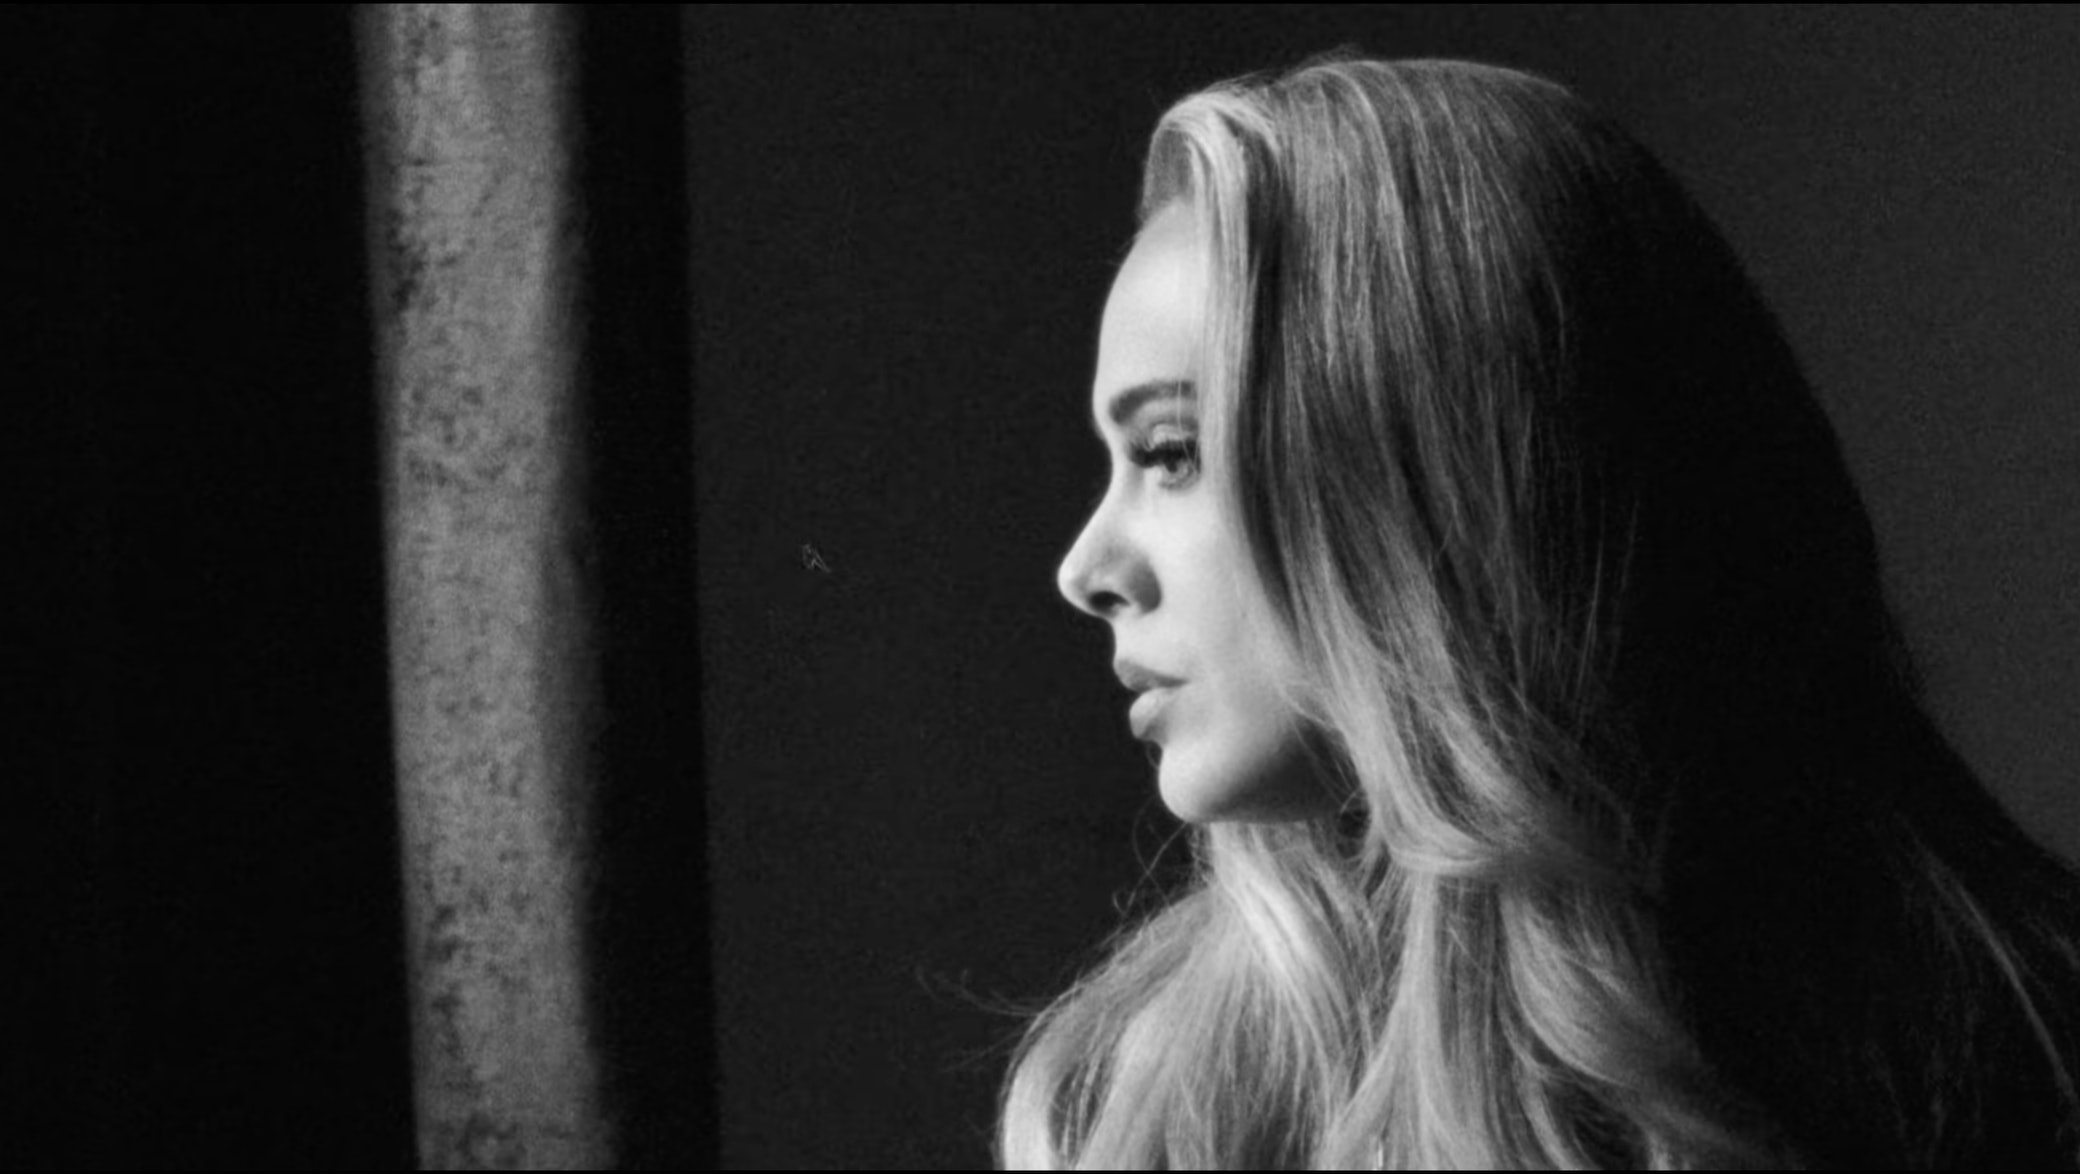 Το Twitter έχει μια απόλυτη μέρα στο γήπεδο με το νέο σινγκλ της Adele